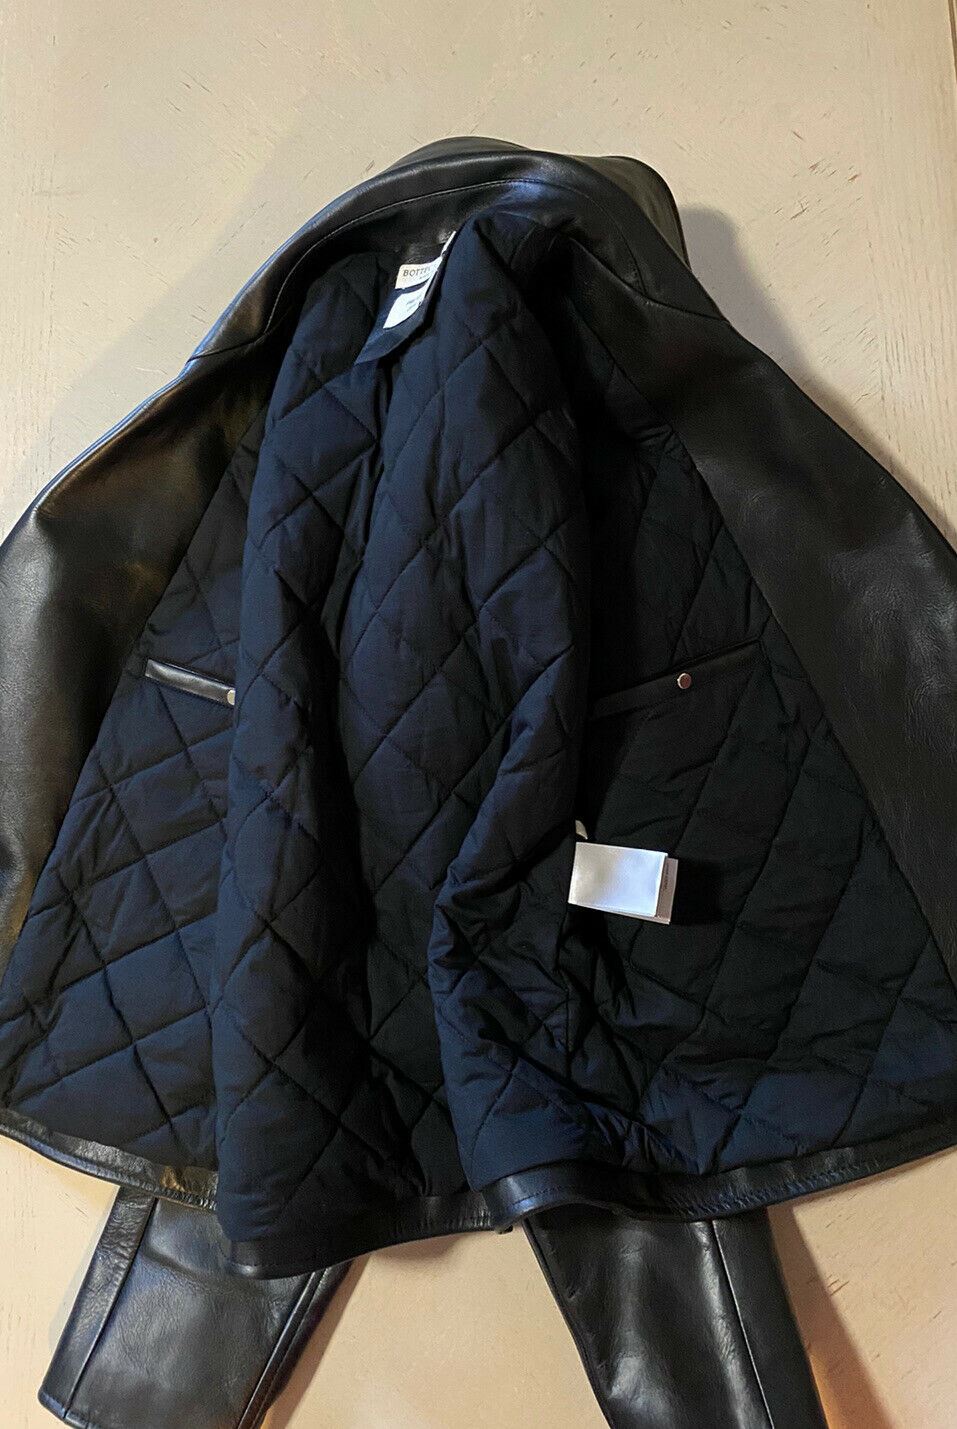 Новая мужская мотоциклетная кожаная куртка Bottega Veneta за 5700 долларов, черная 42 US/52 EU